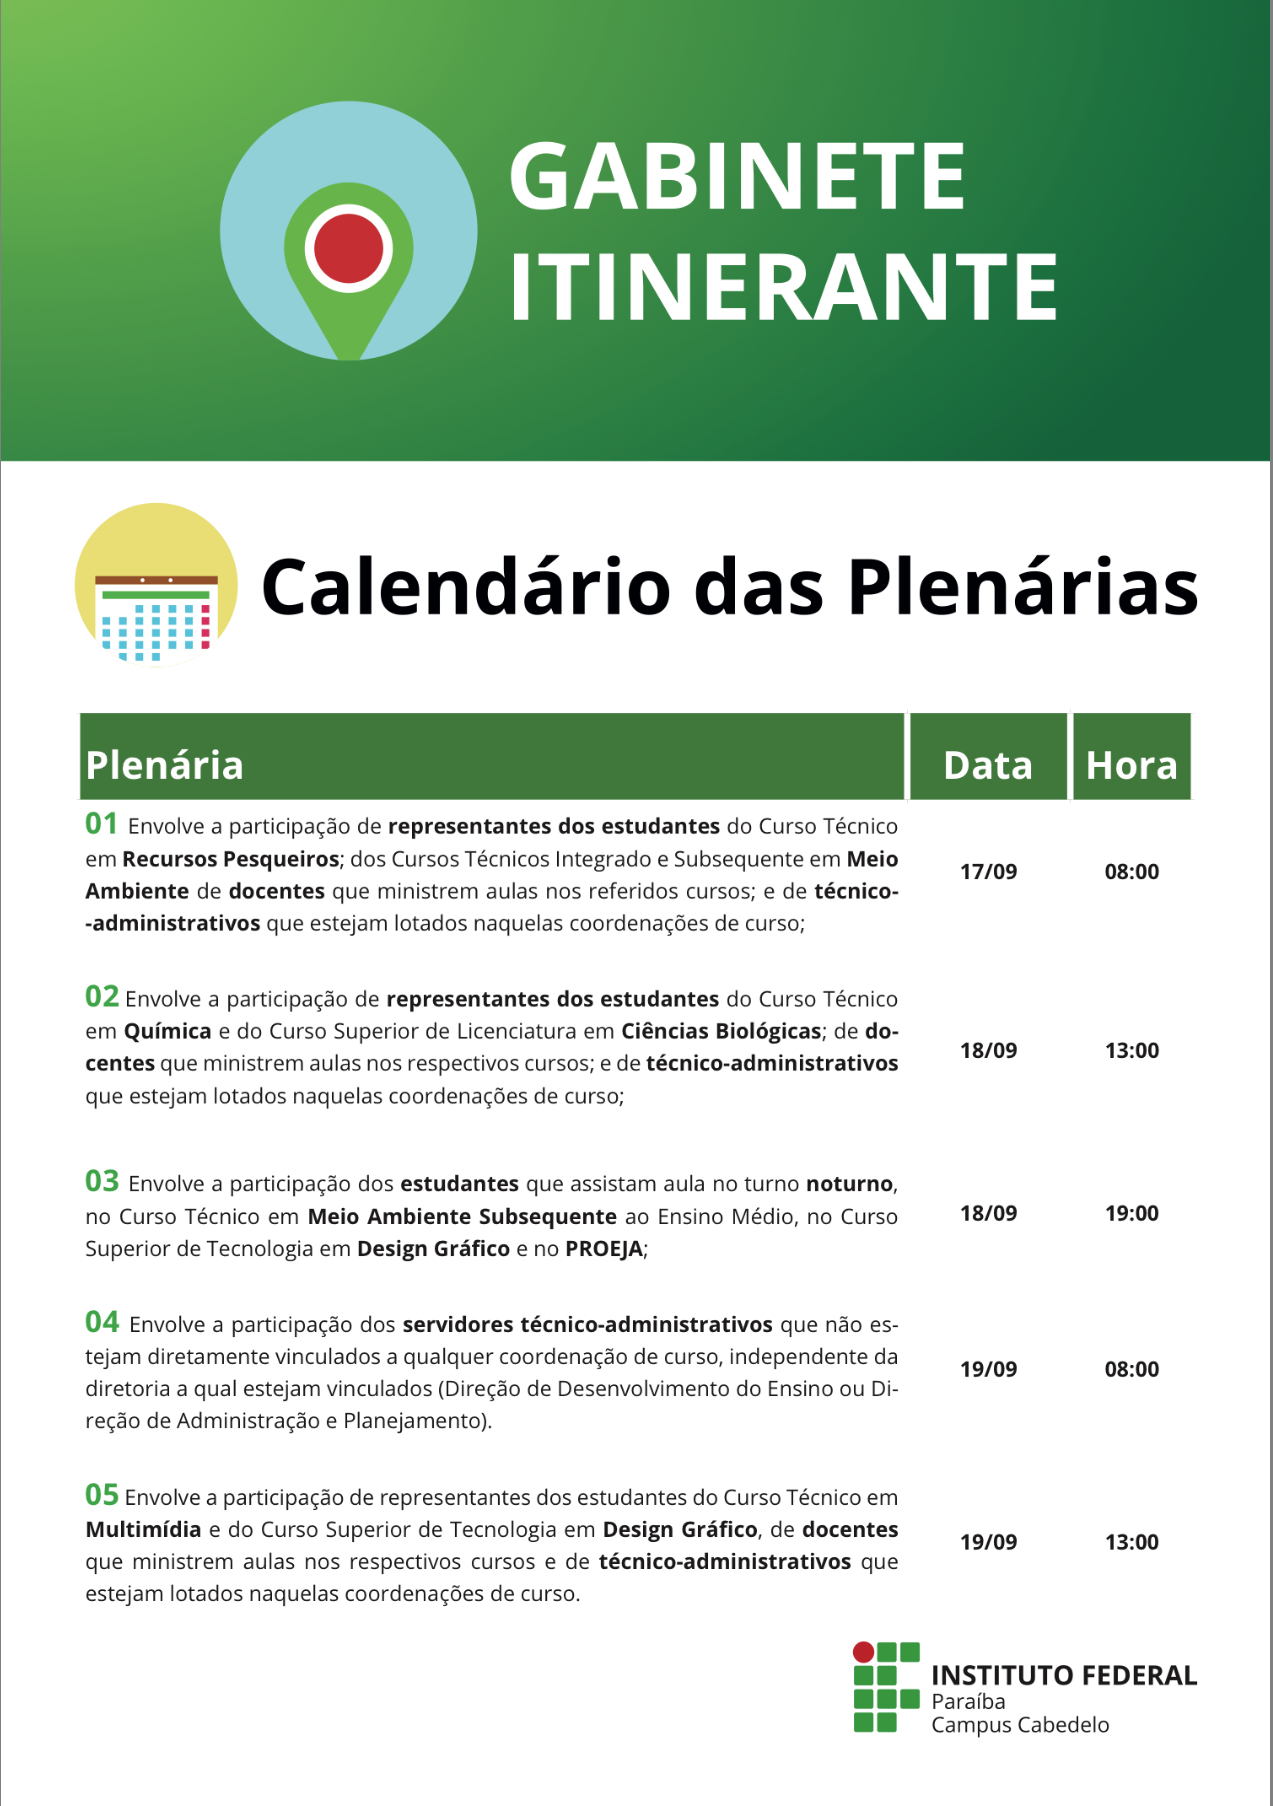 Calendário de Plenarias - Gabinete Itinerante 2018